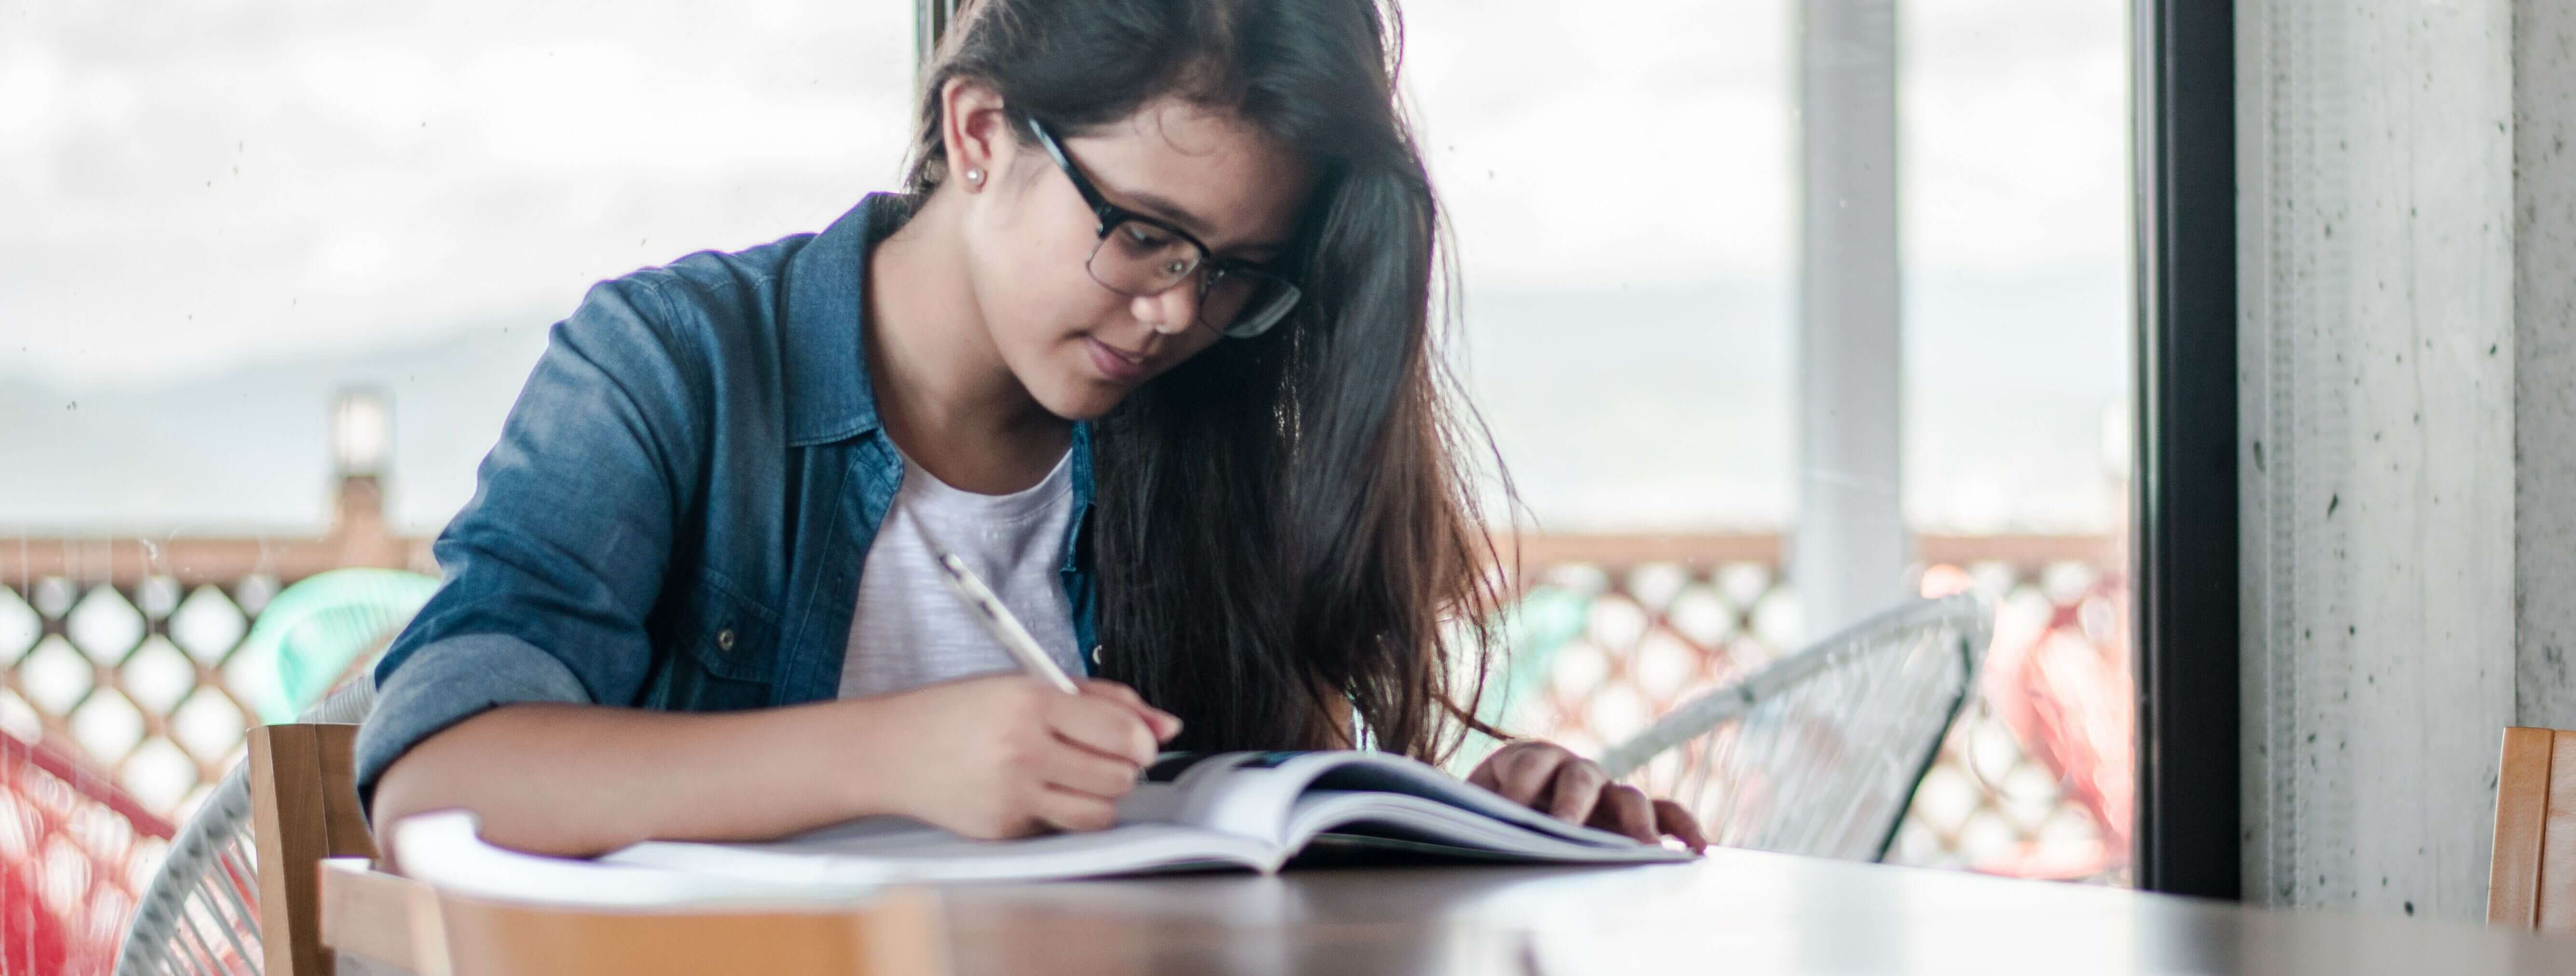 Imagem de uma menina olhando para um livro aberto na mesa e segurando um lápis.